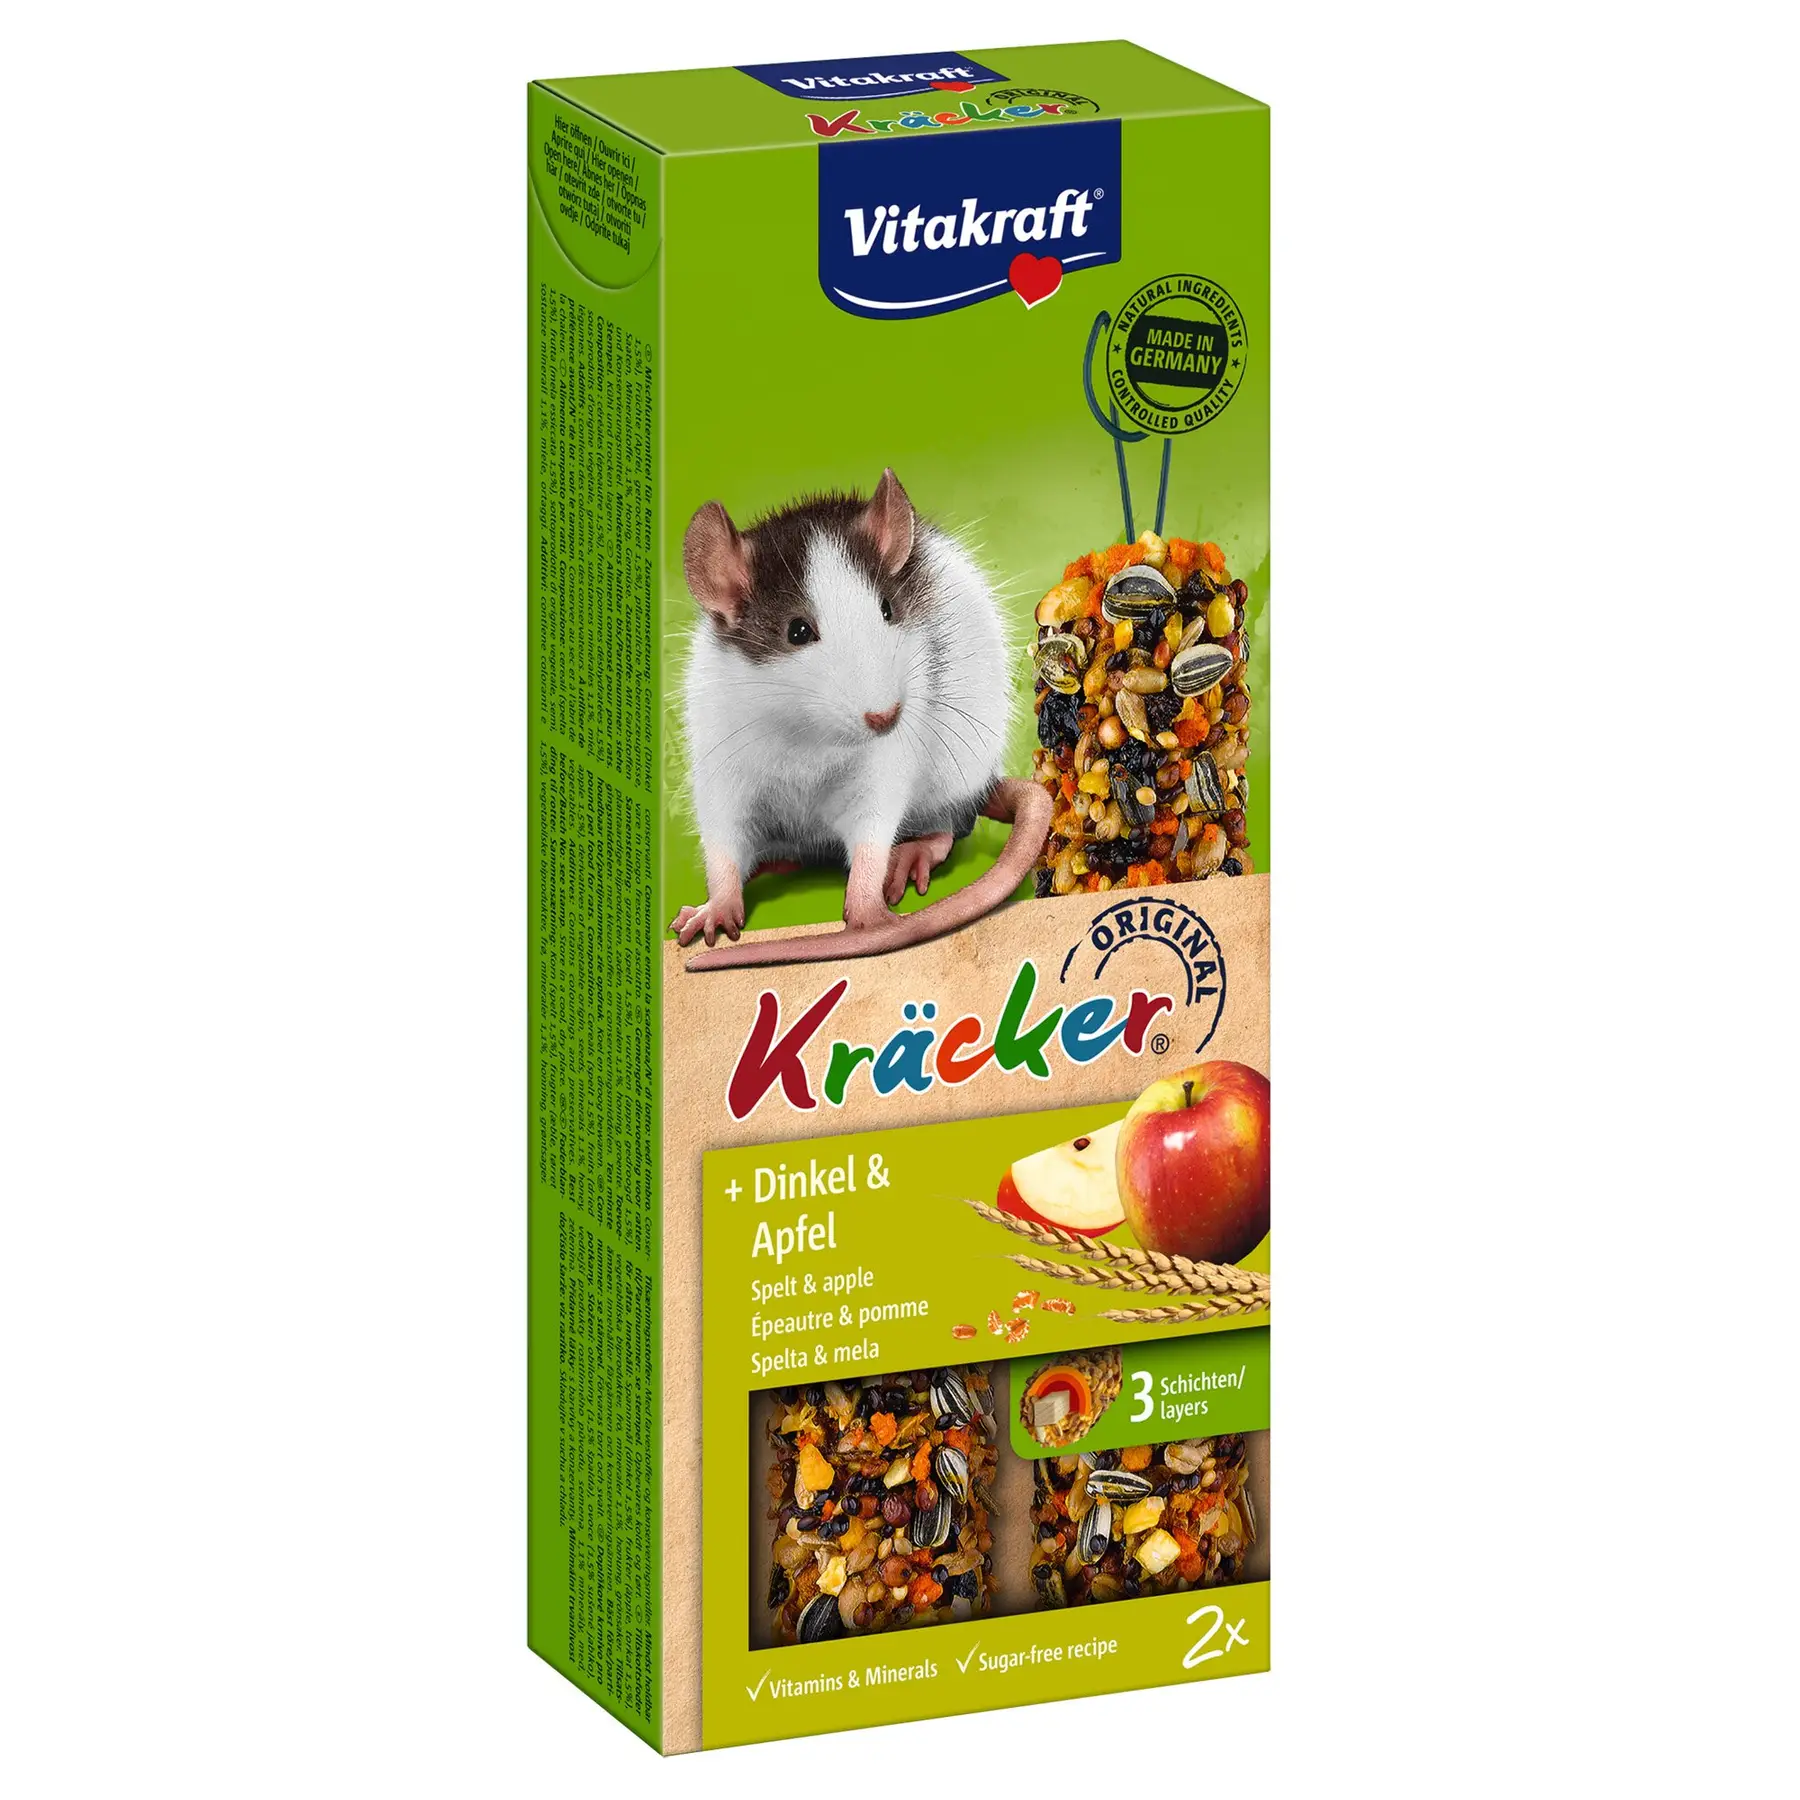 Лакомство для крыс Vitakraft Kracker Original + Spelt & Apple, спельта и яблоко, 2 шт., 112 г (25140) - фото 1